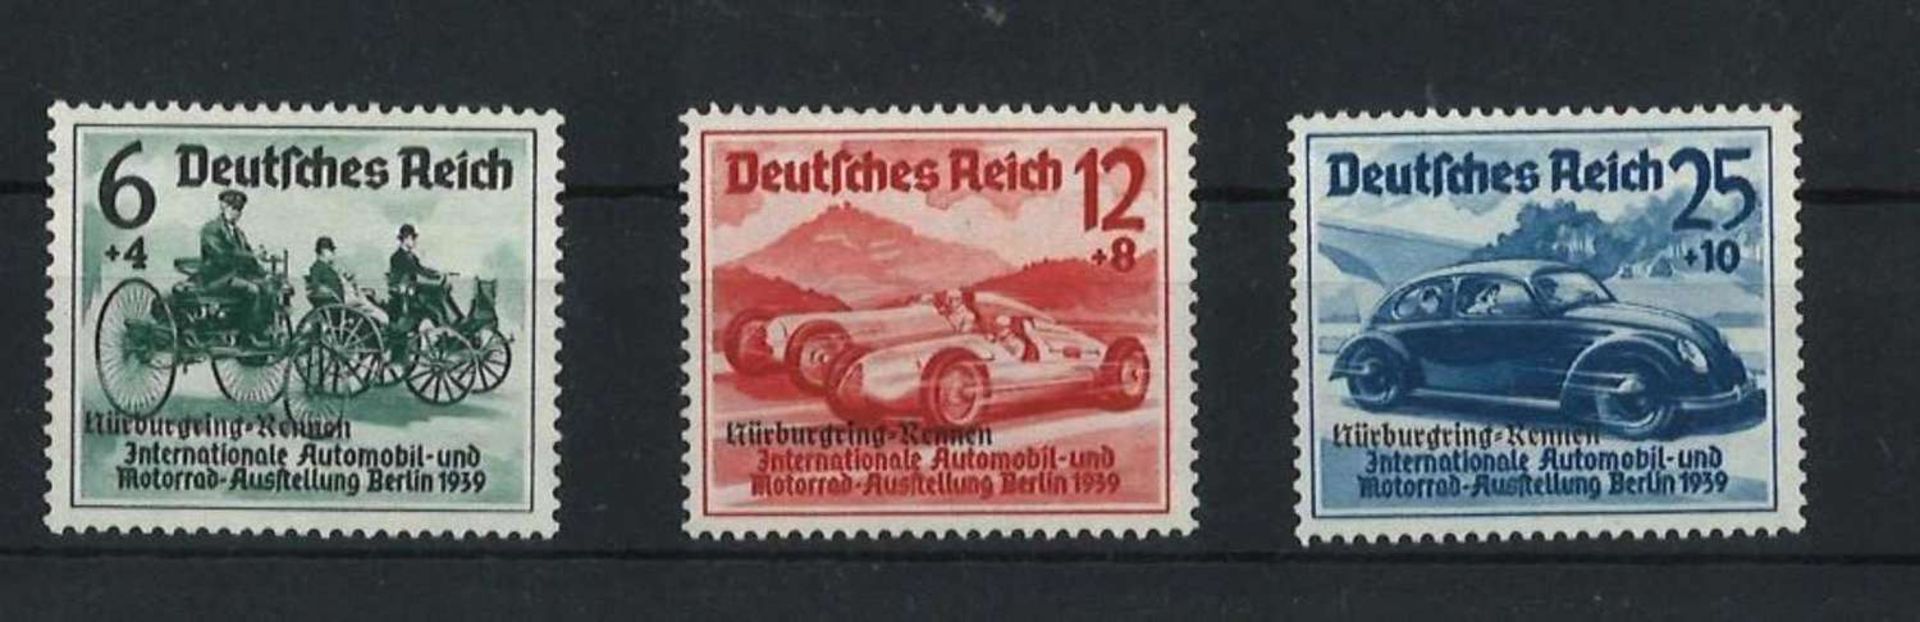 Dt. Reich 1939,Mi 695 - 697, Nürburgring Rennen, PostfrischDt. Reich 1939, Mi 695 - 697, Nürburgring